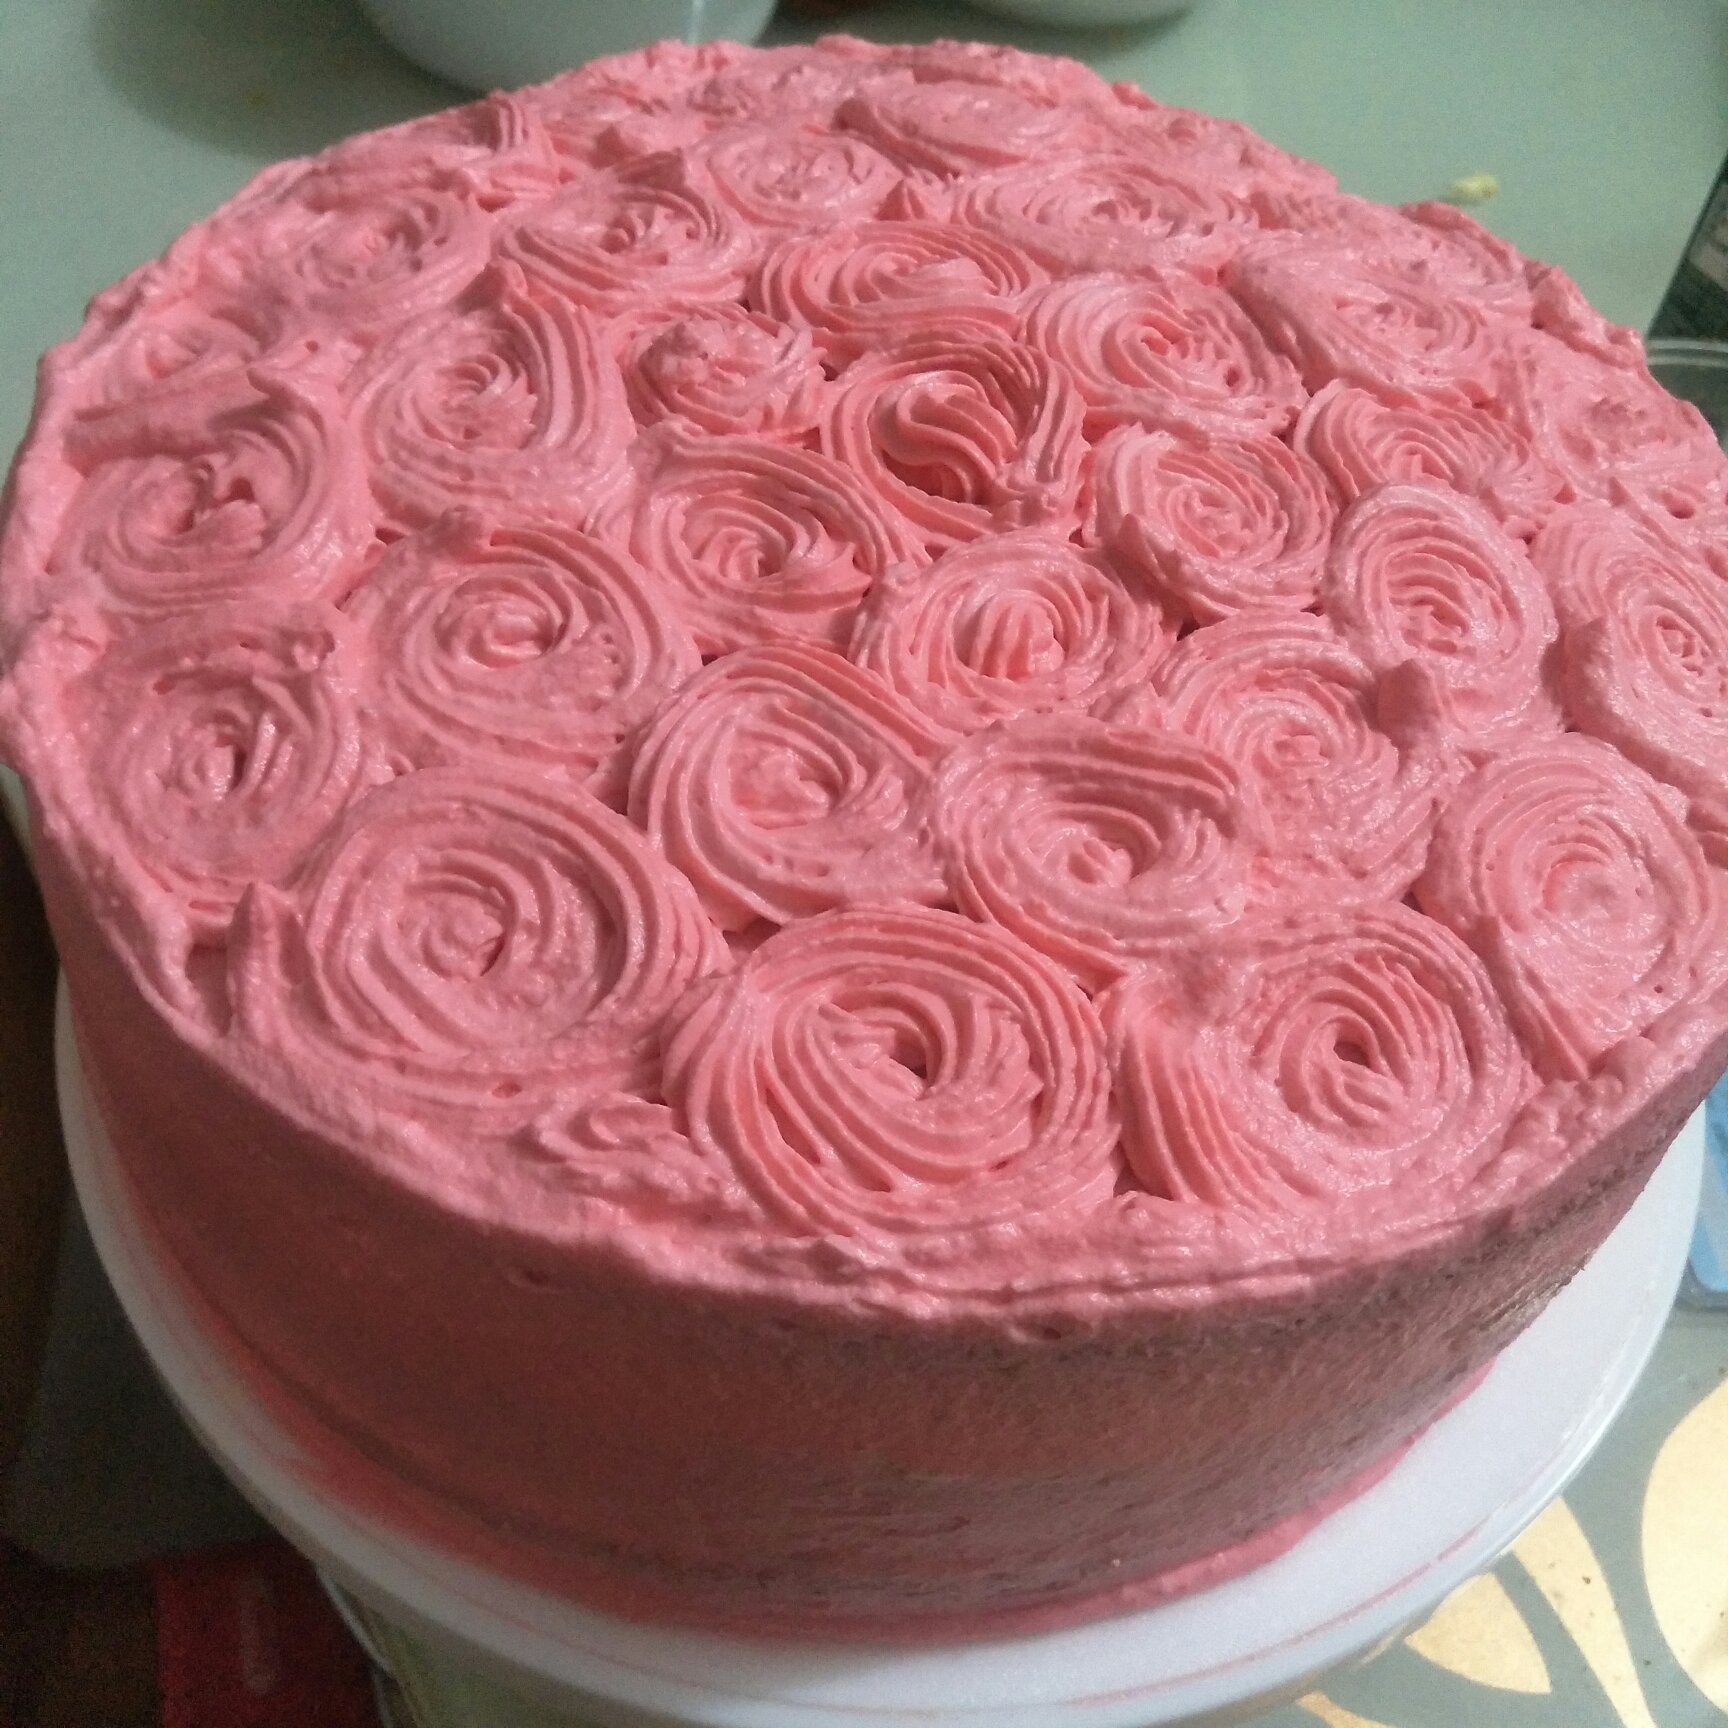 yellow cake蛋糕胚和渐变玫瑰花裱花方法